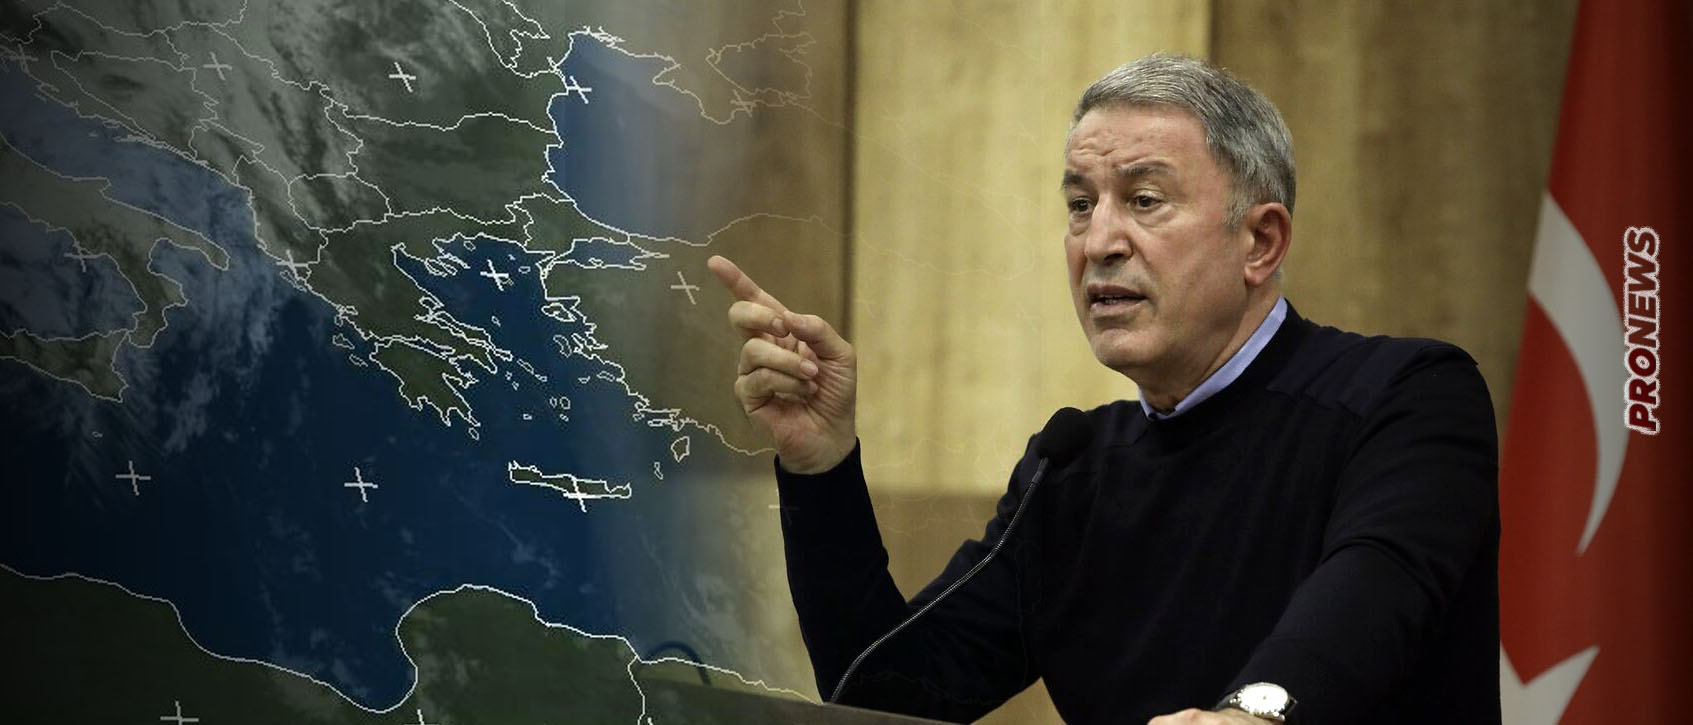 Χ.Ακάρ: «Δεν θα ανεχτούμε περισσότερα από 6 ν.μ. στην Κρήτη» – Νέα απειλή πολέμου από την Άγκυρα